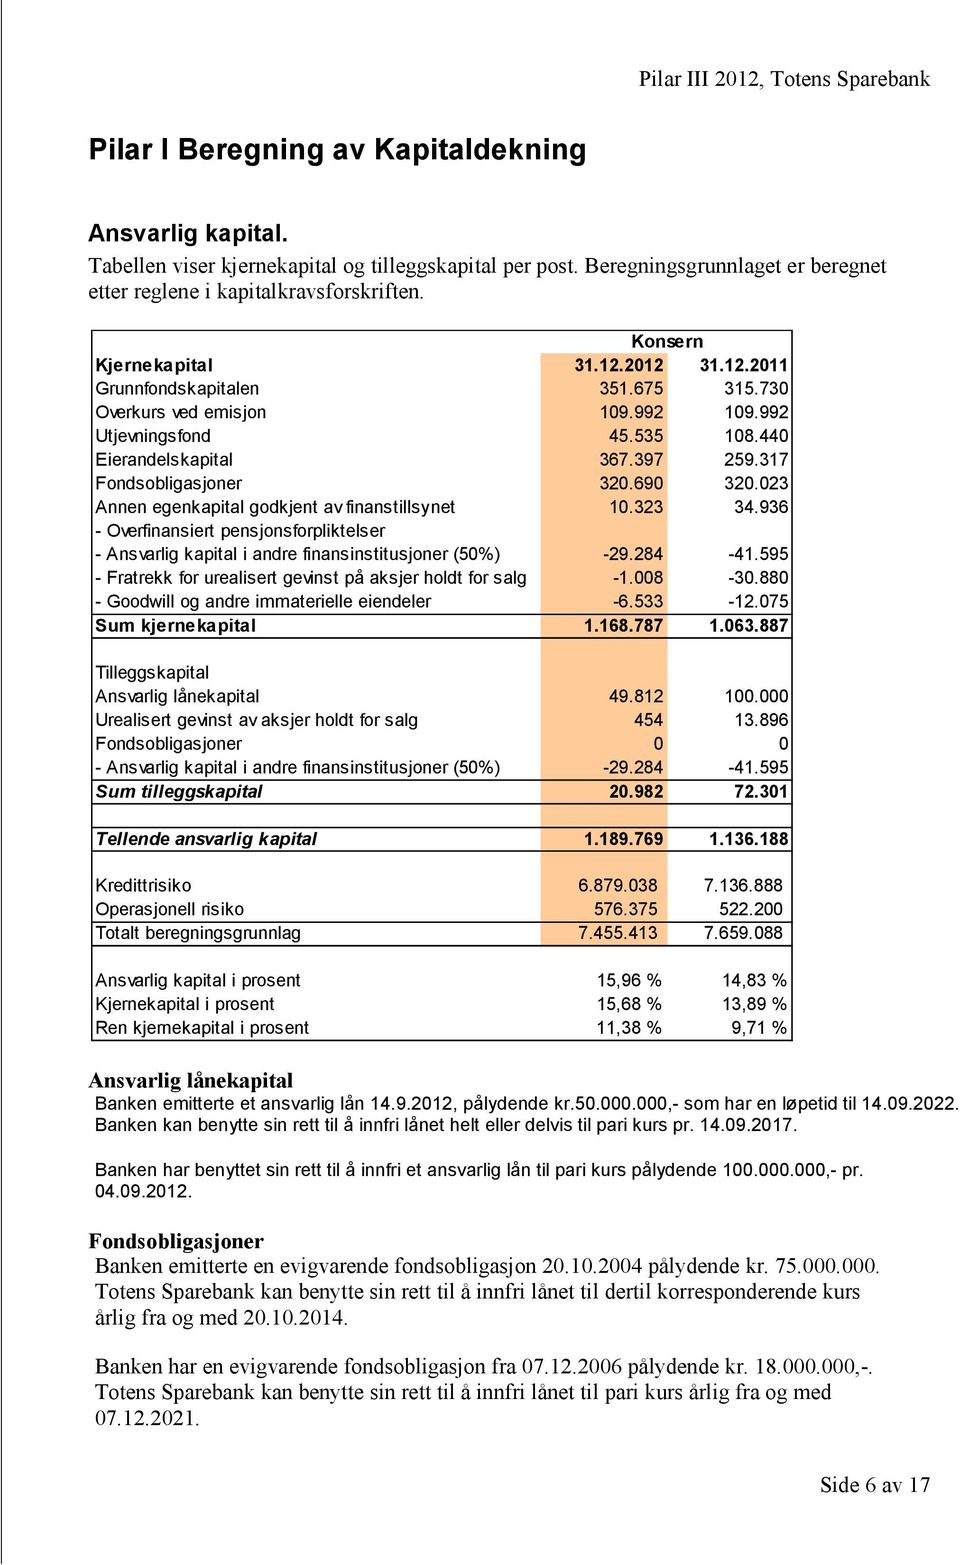 317 Fondsobligasjoner 320.690 320.023 Annen egenkapital godkjent av finanstillsynet 10.323 34.936 - Overfinansiert pensjonsforpliktelser - Ansvarlig kapital i andre finansinstitusjoner (50%) -29.